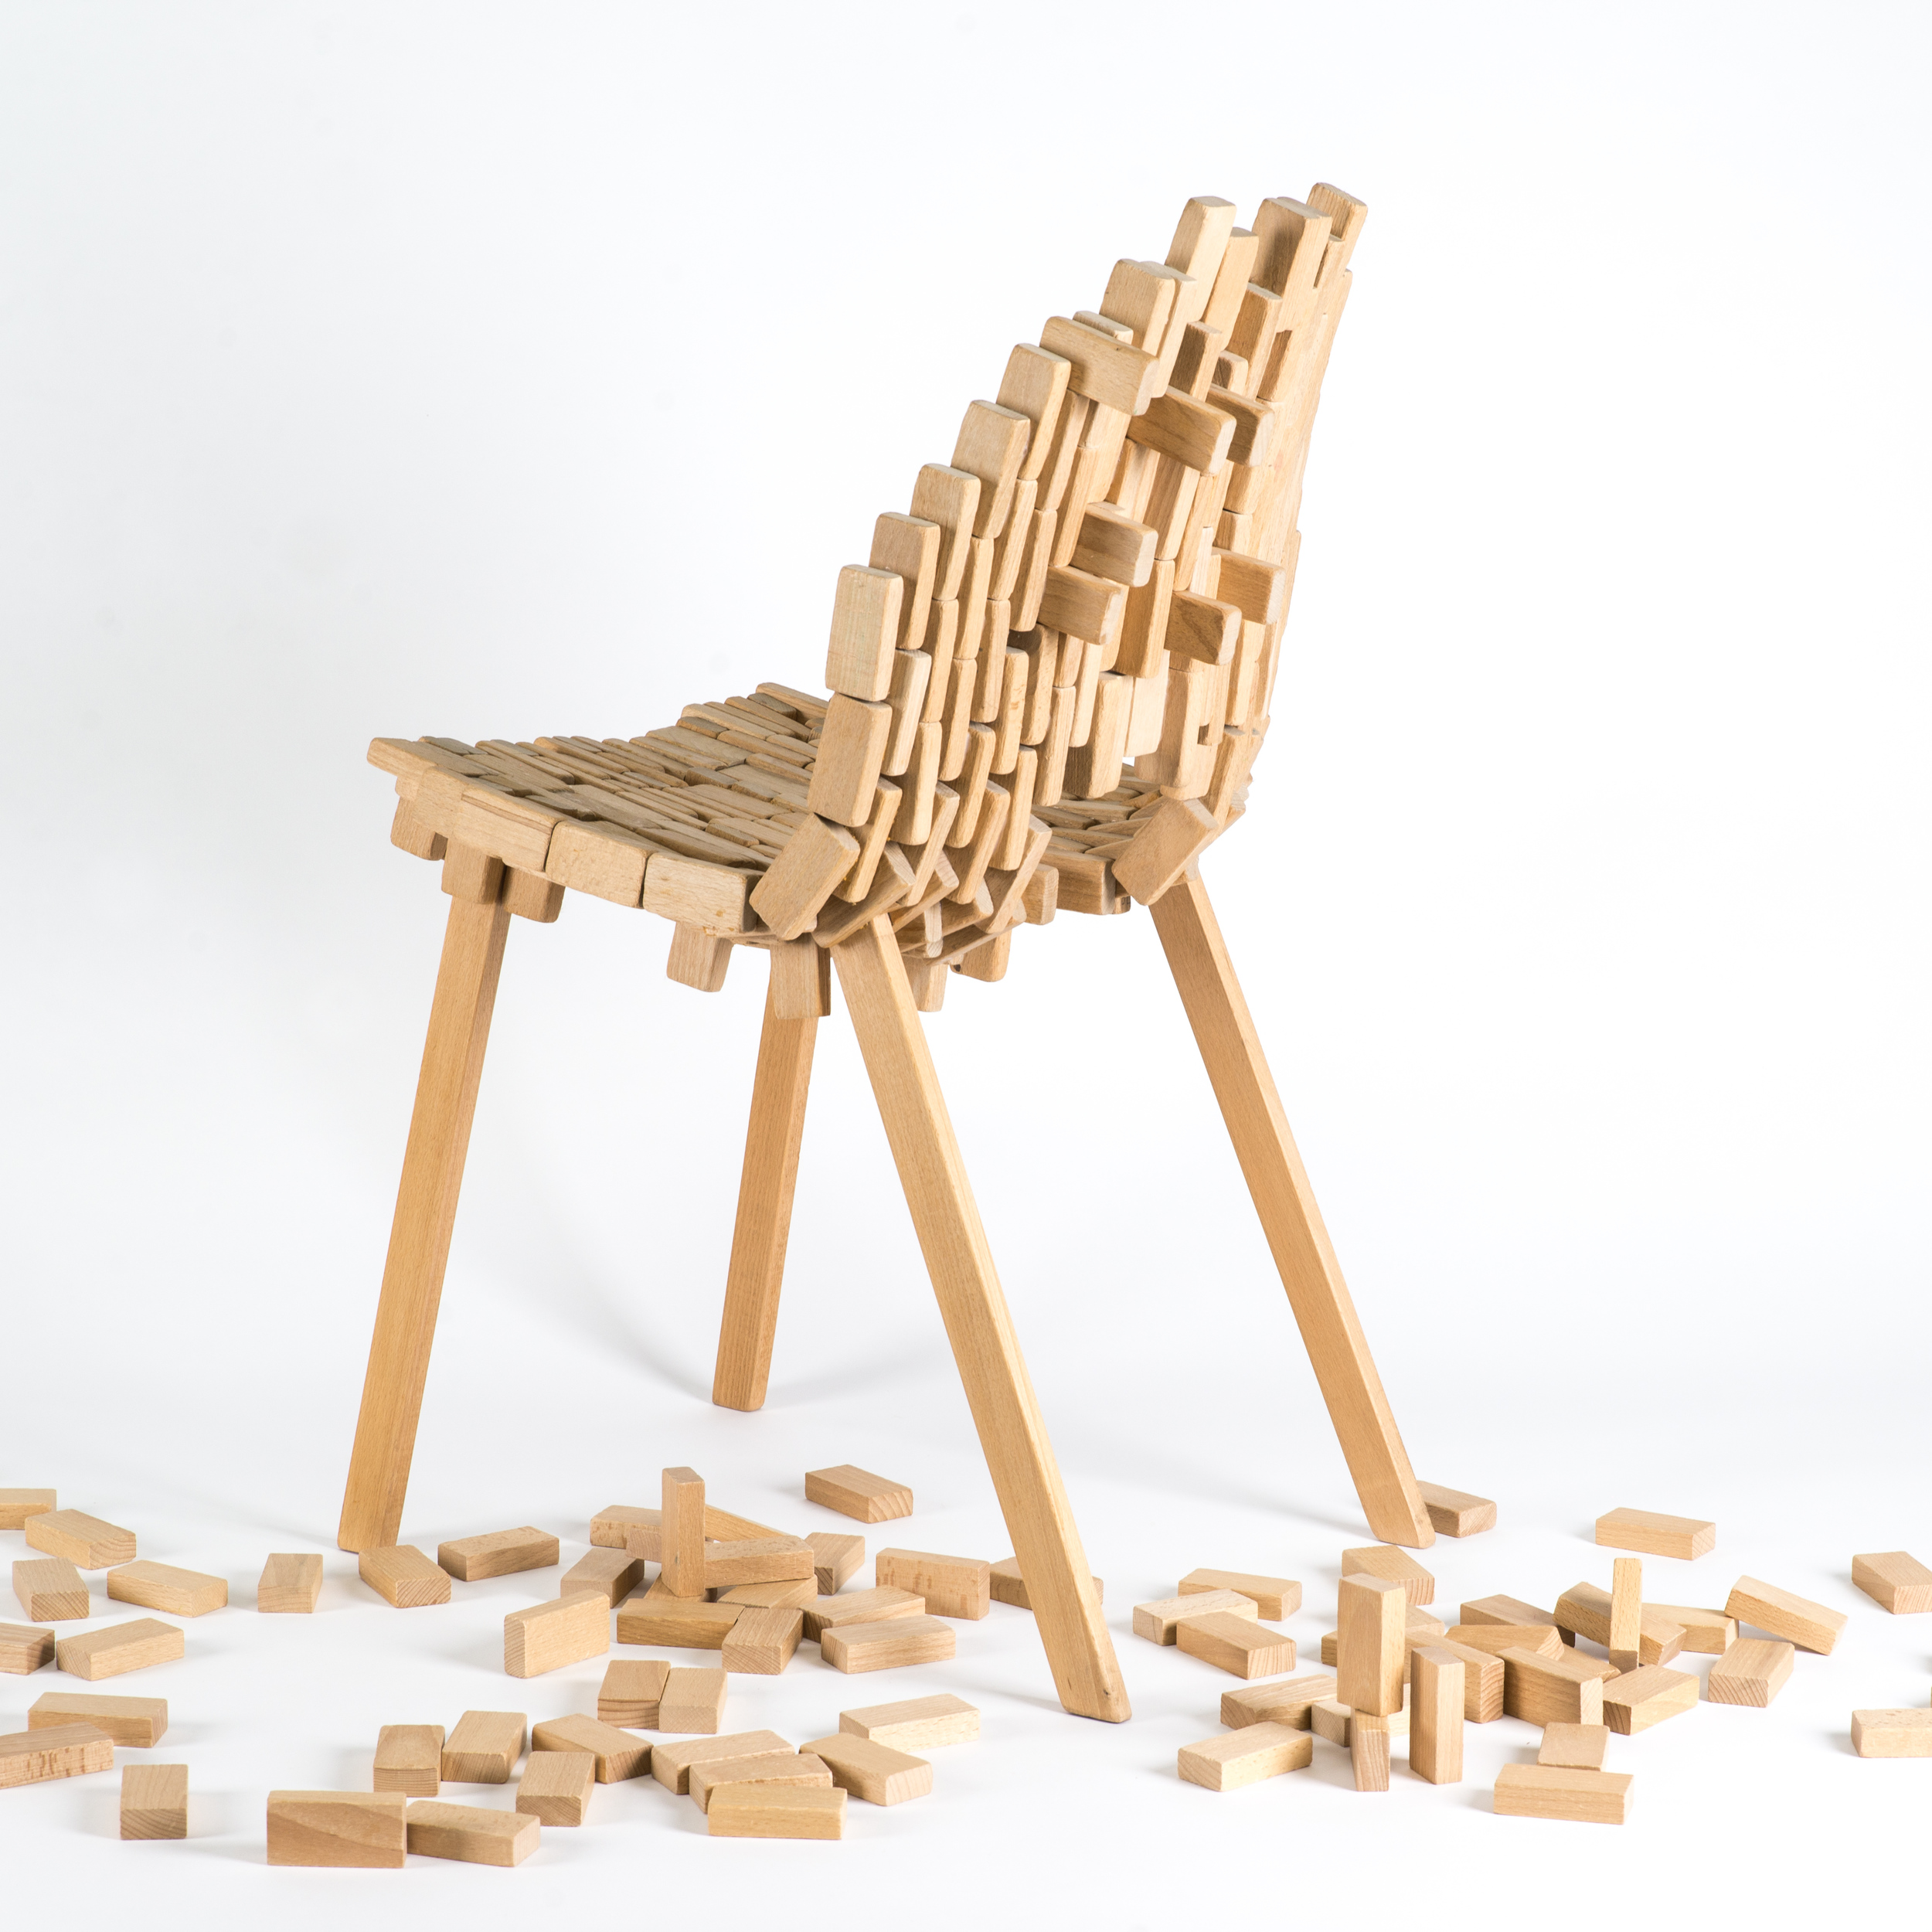 Bricks-chair-05.jpg